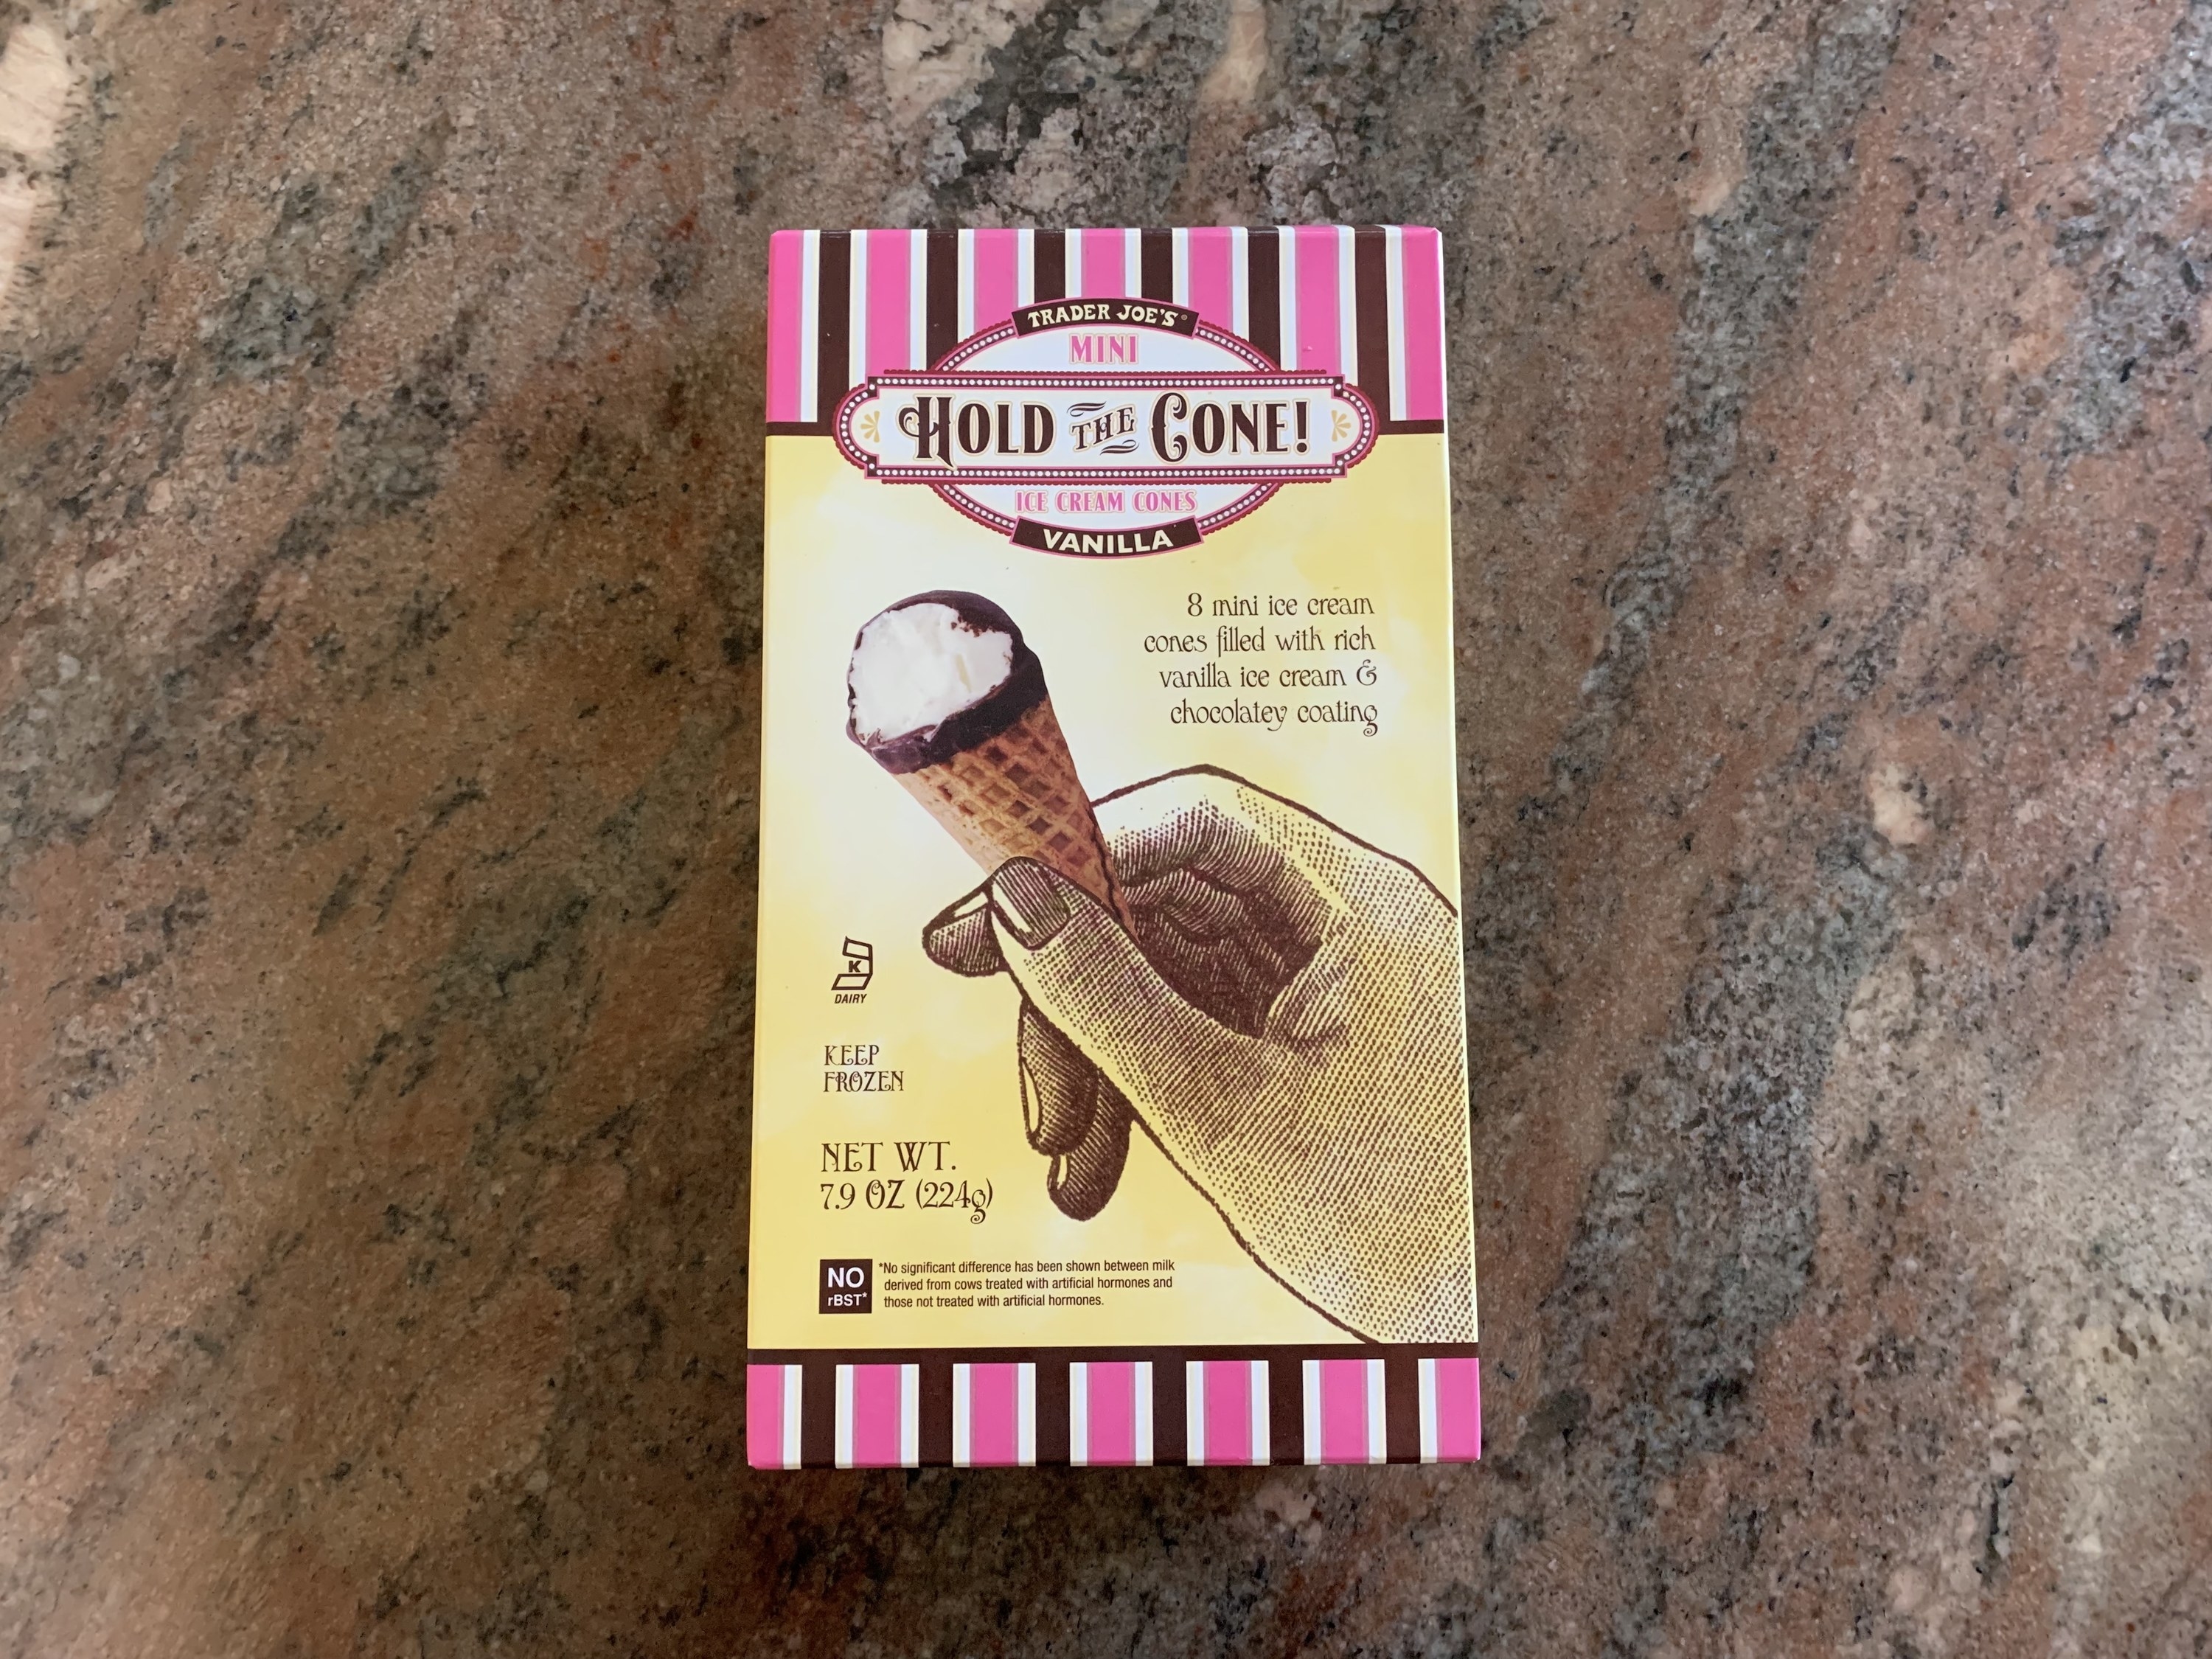 A box of mini ice cream cones on the counter